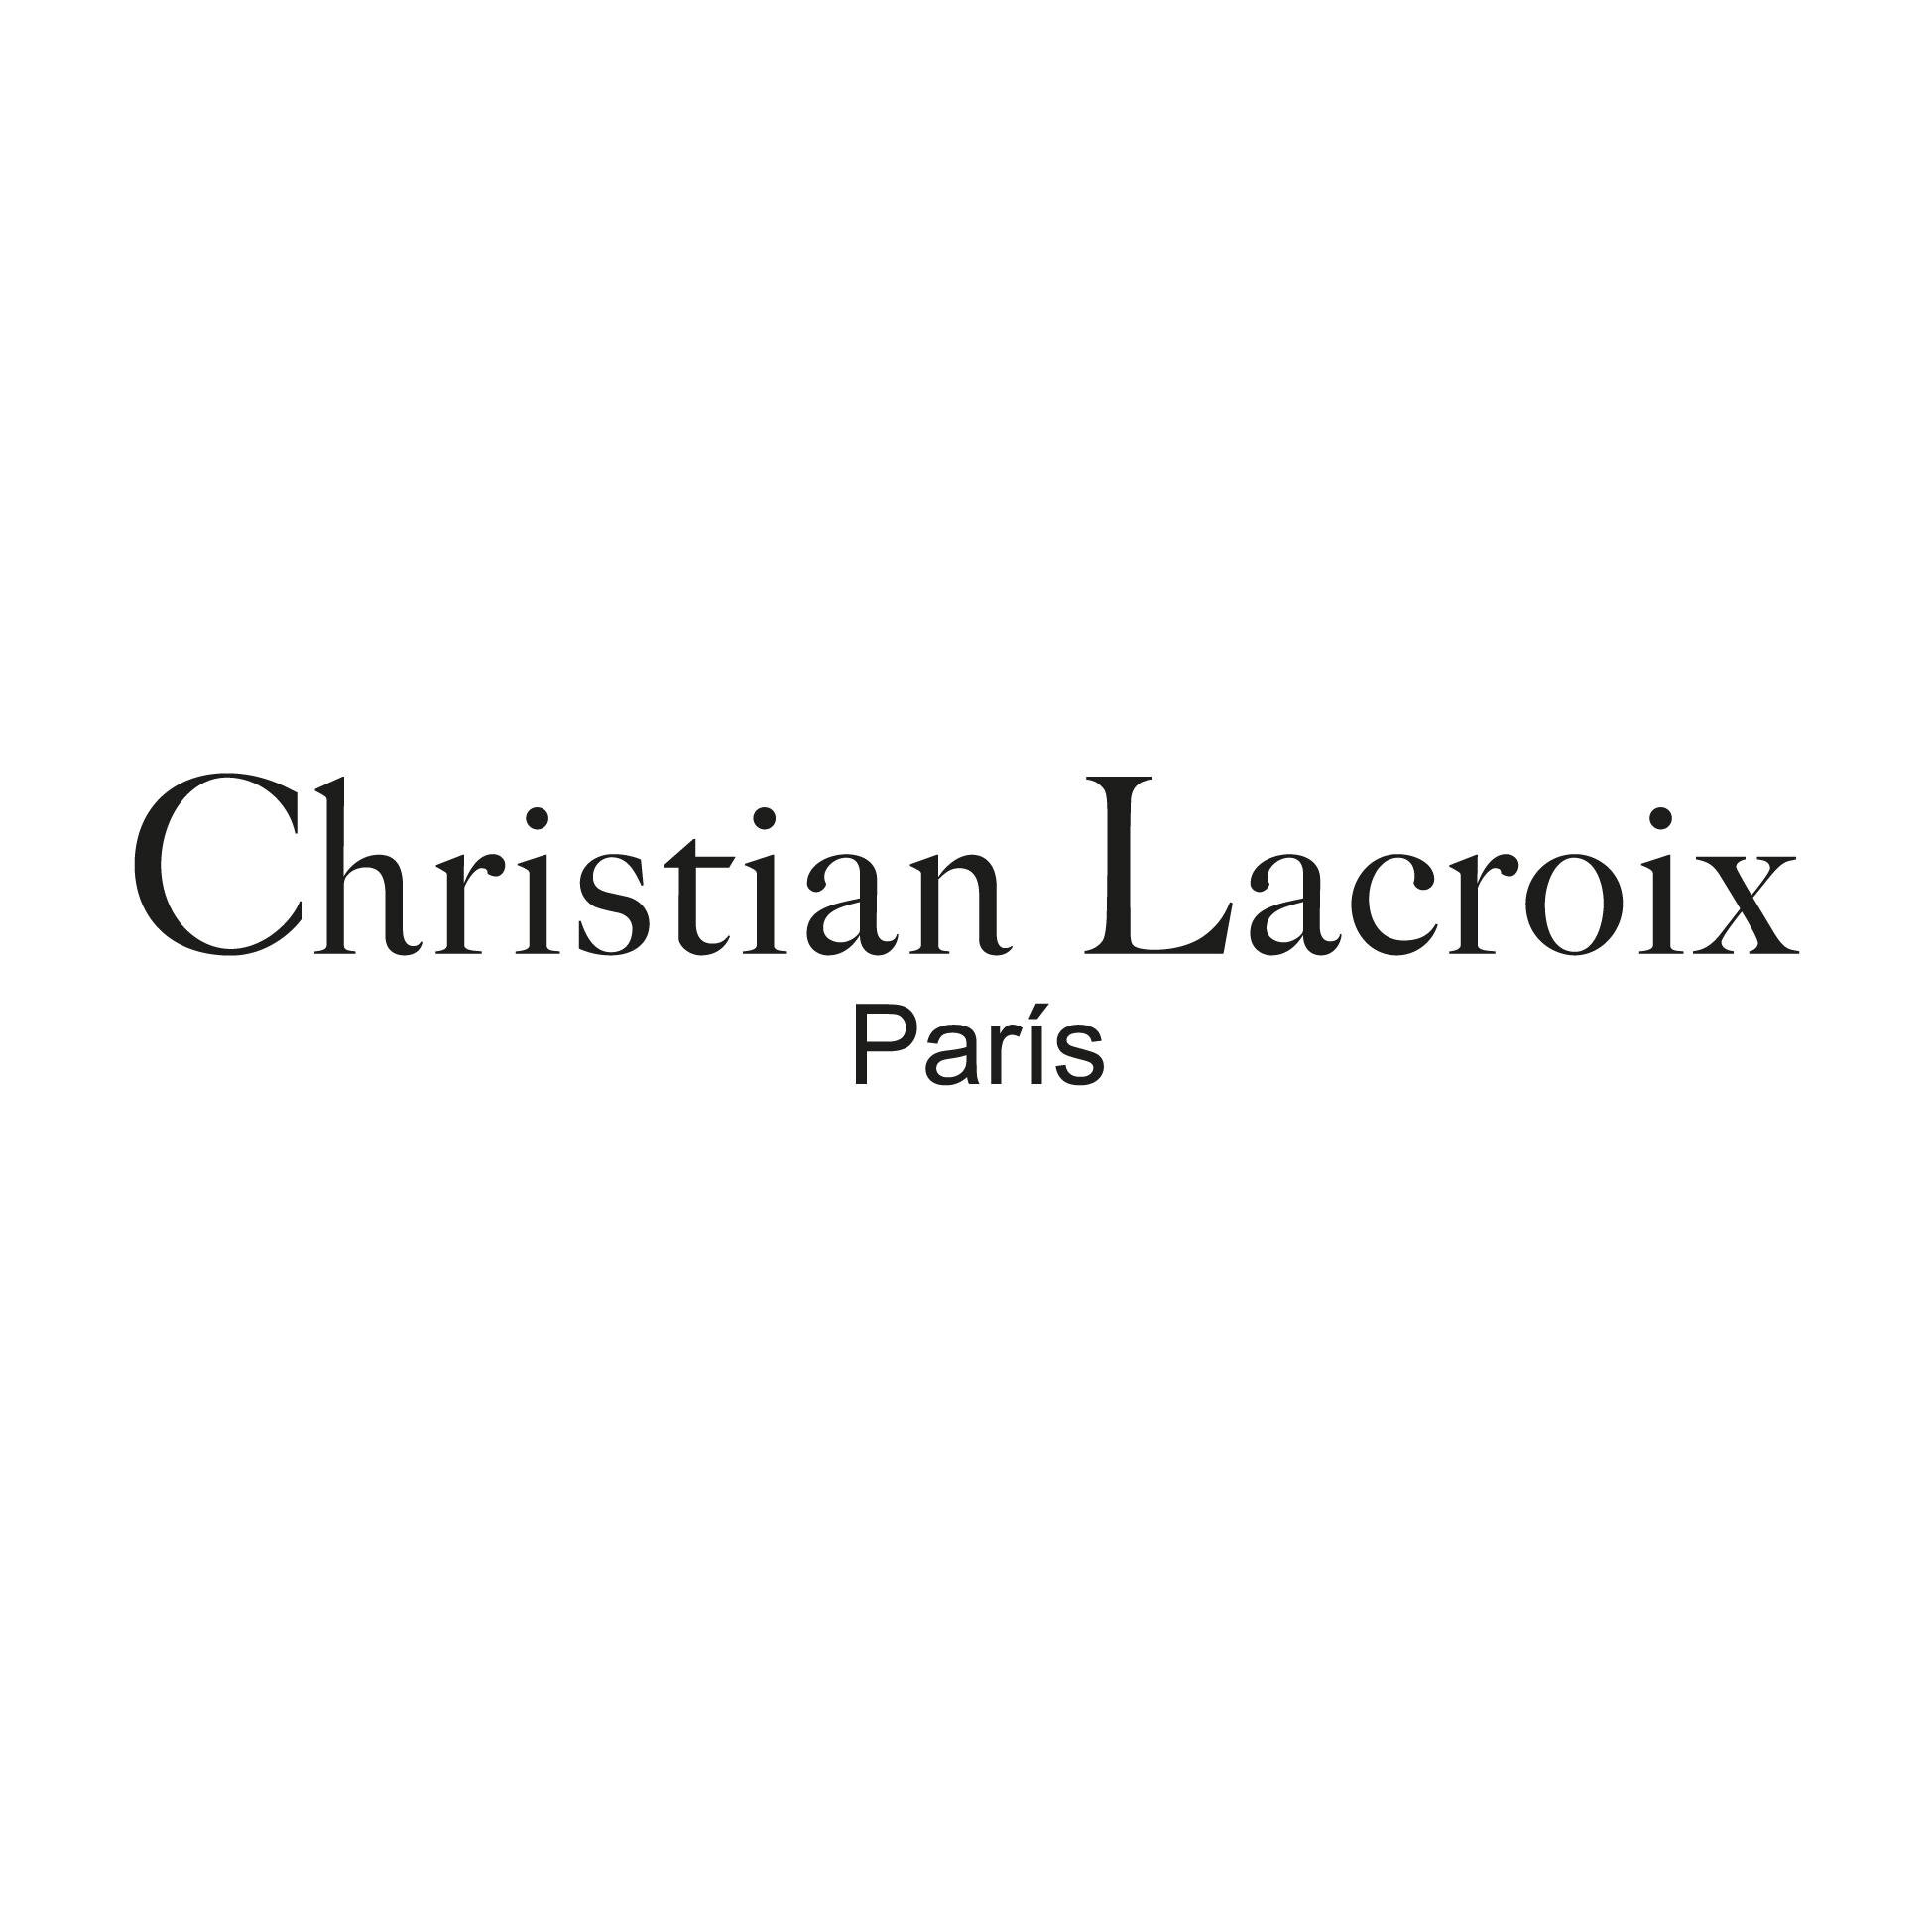 Twitter oficial de Christian Lacroix